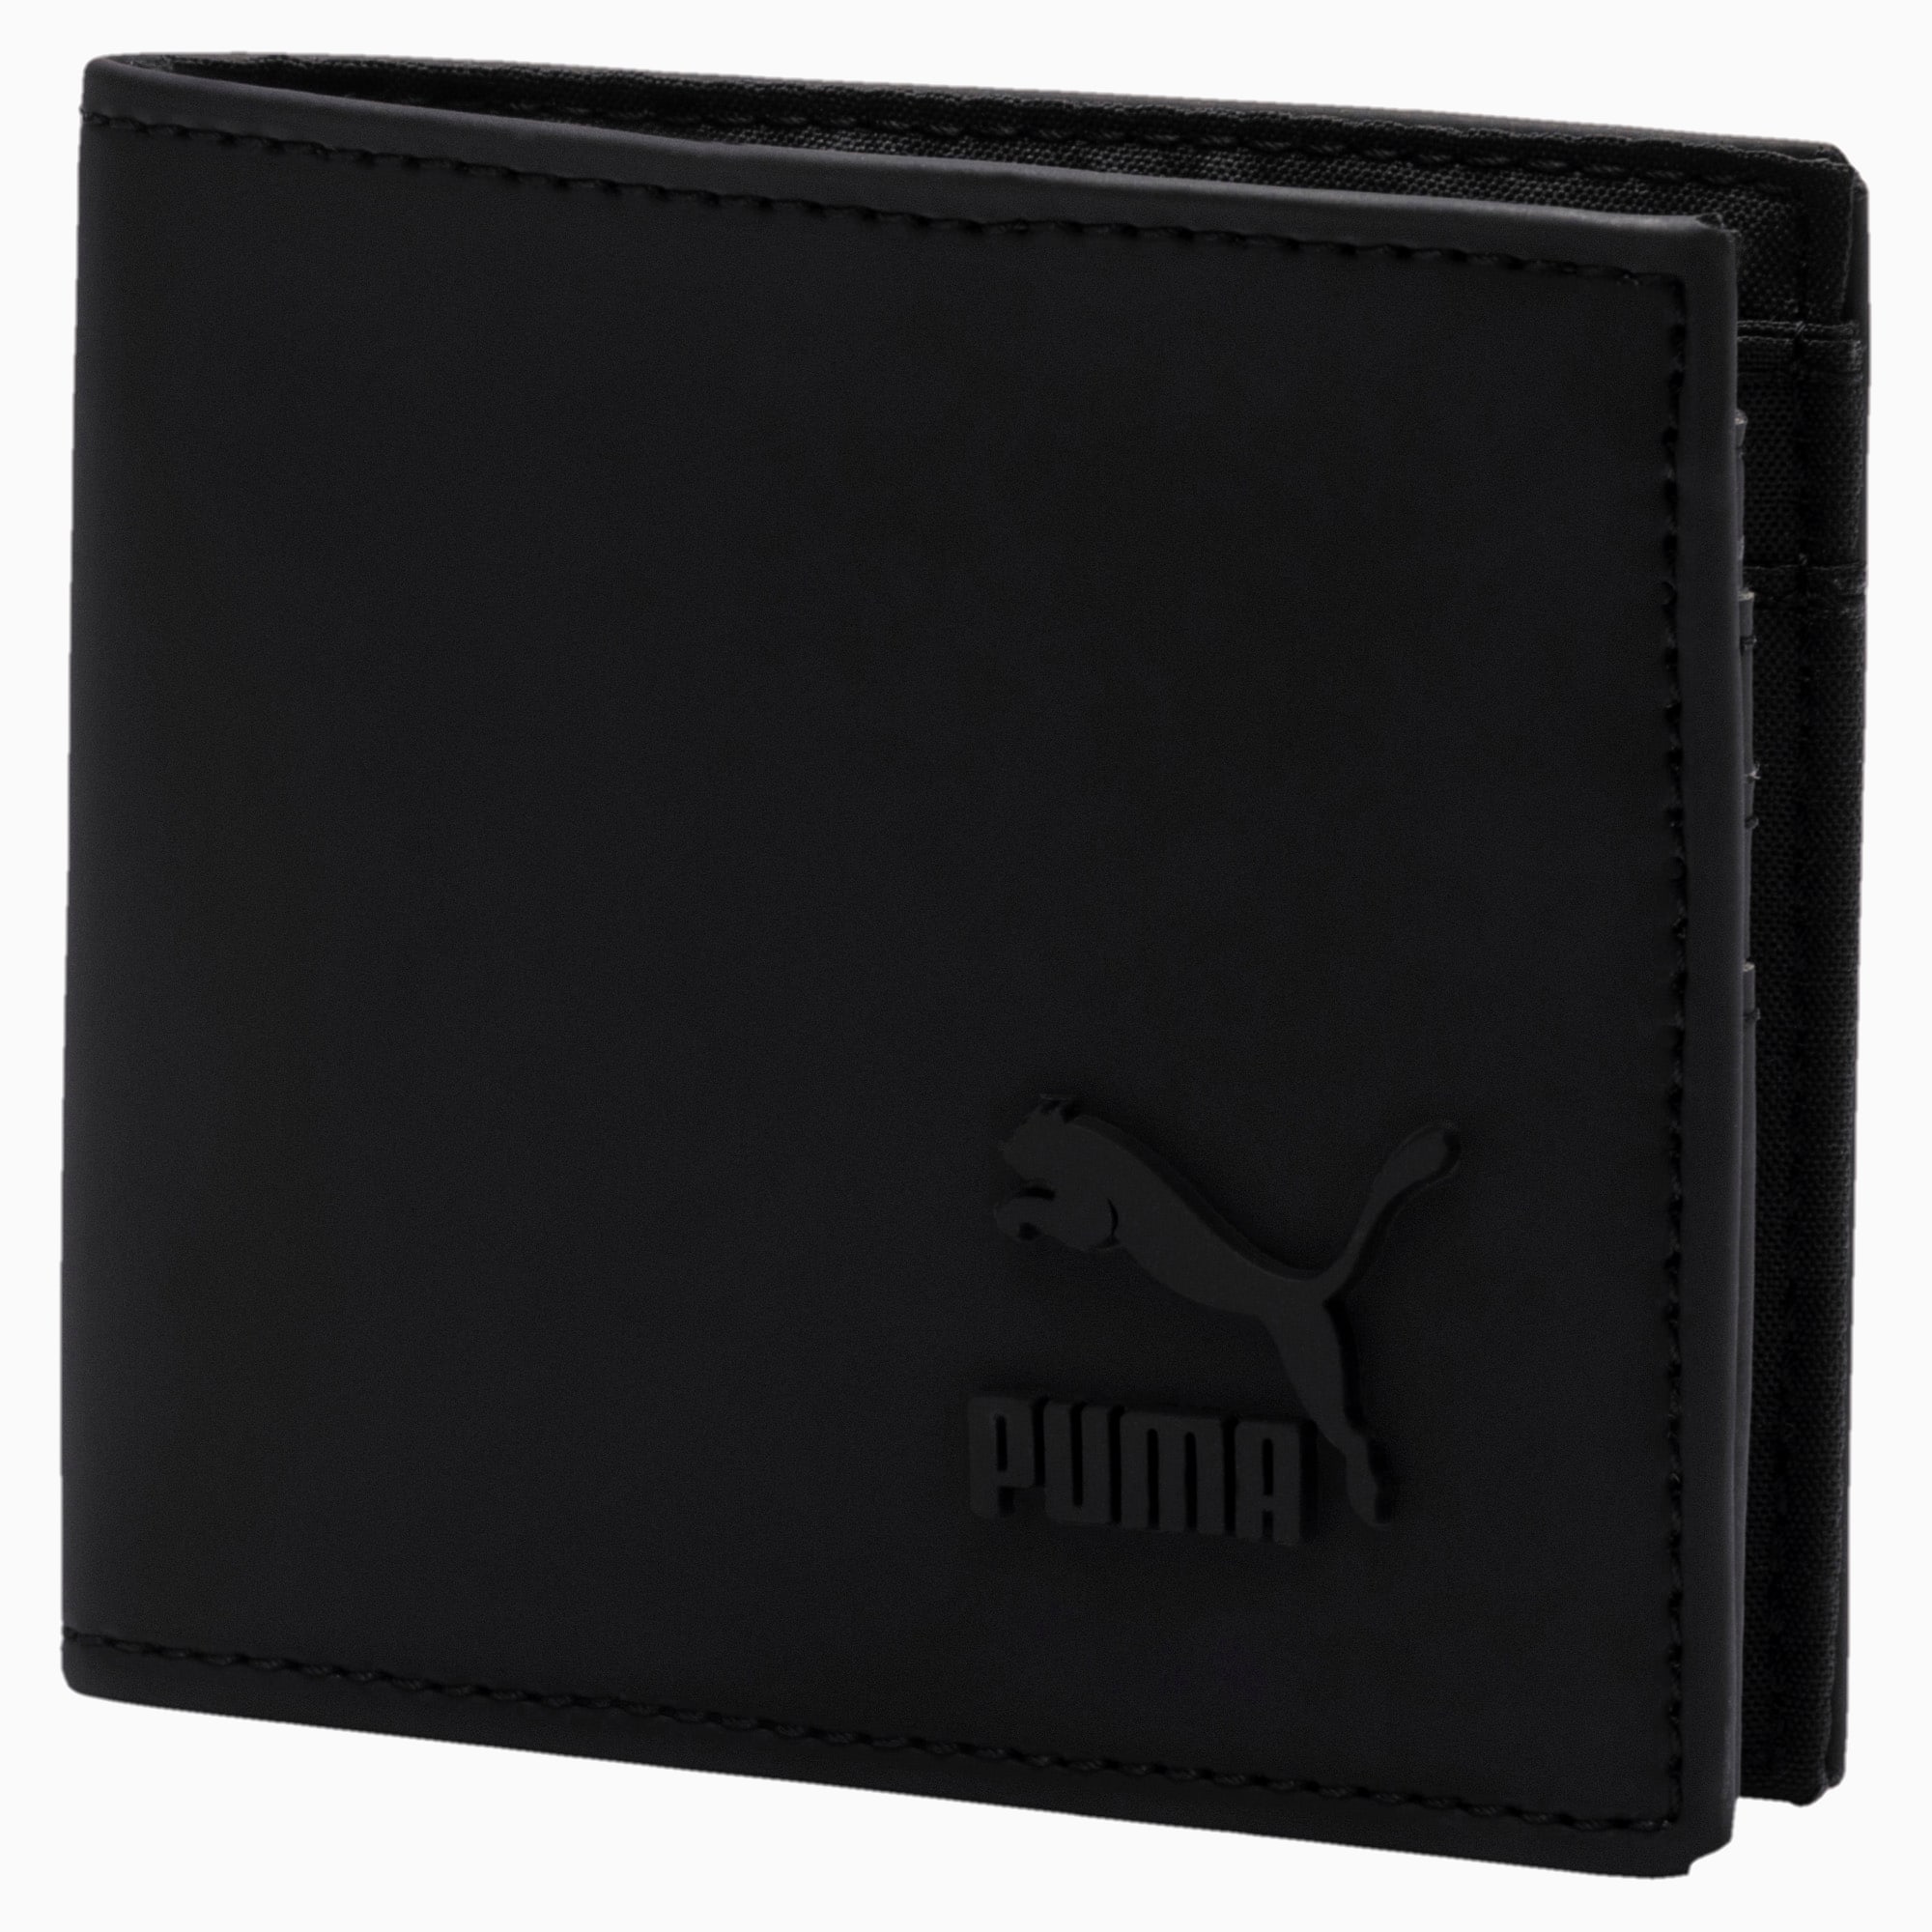 Originals Wallet | Puma Black | PUMA 